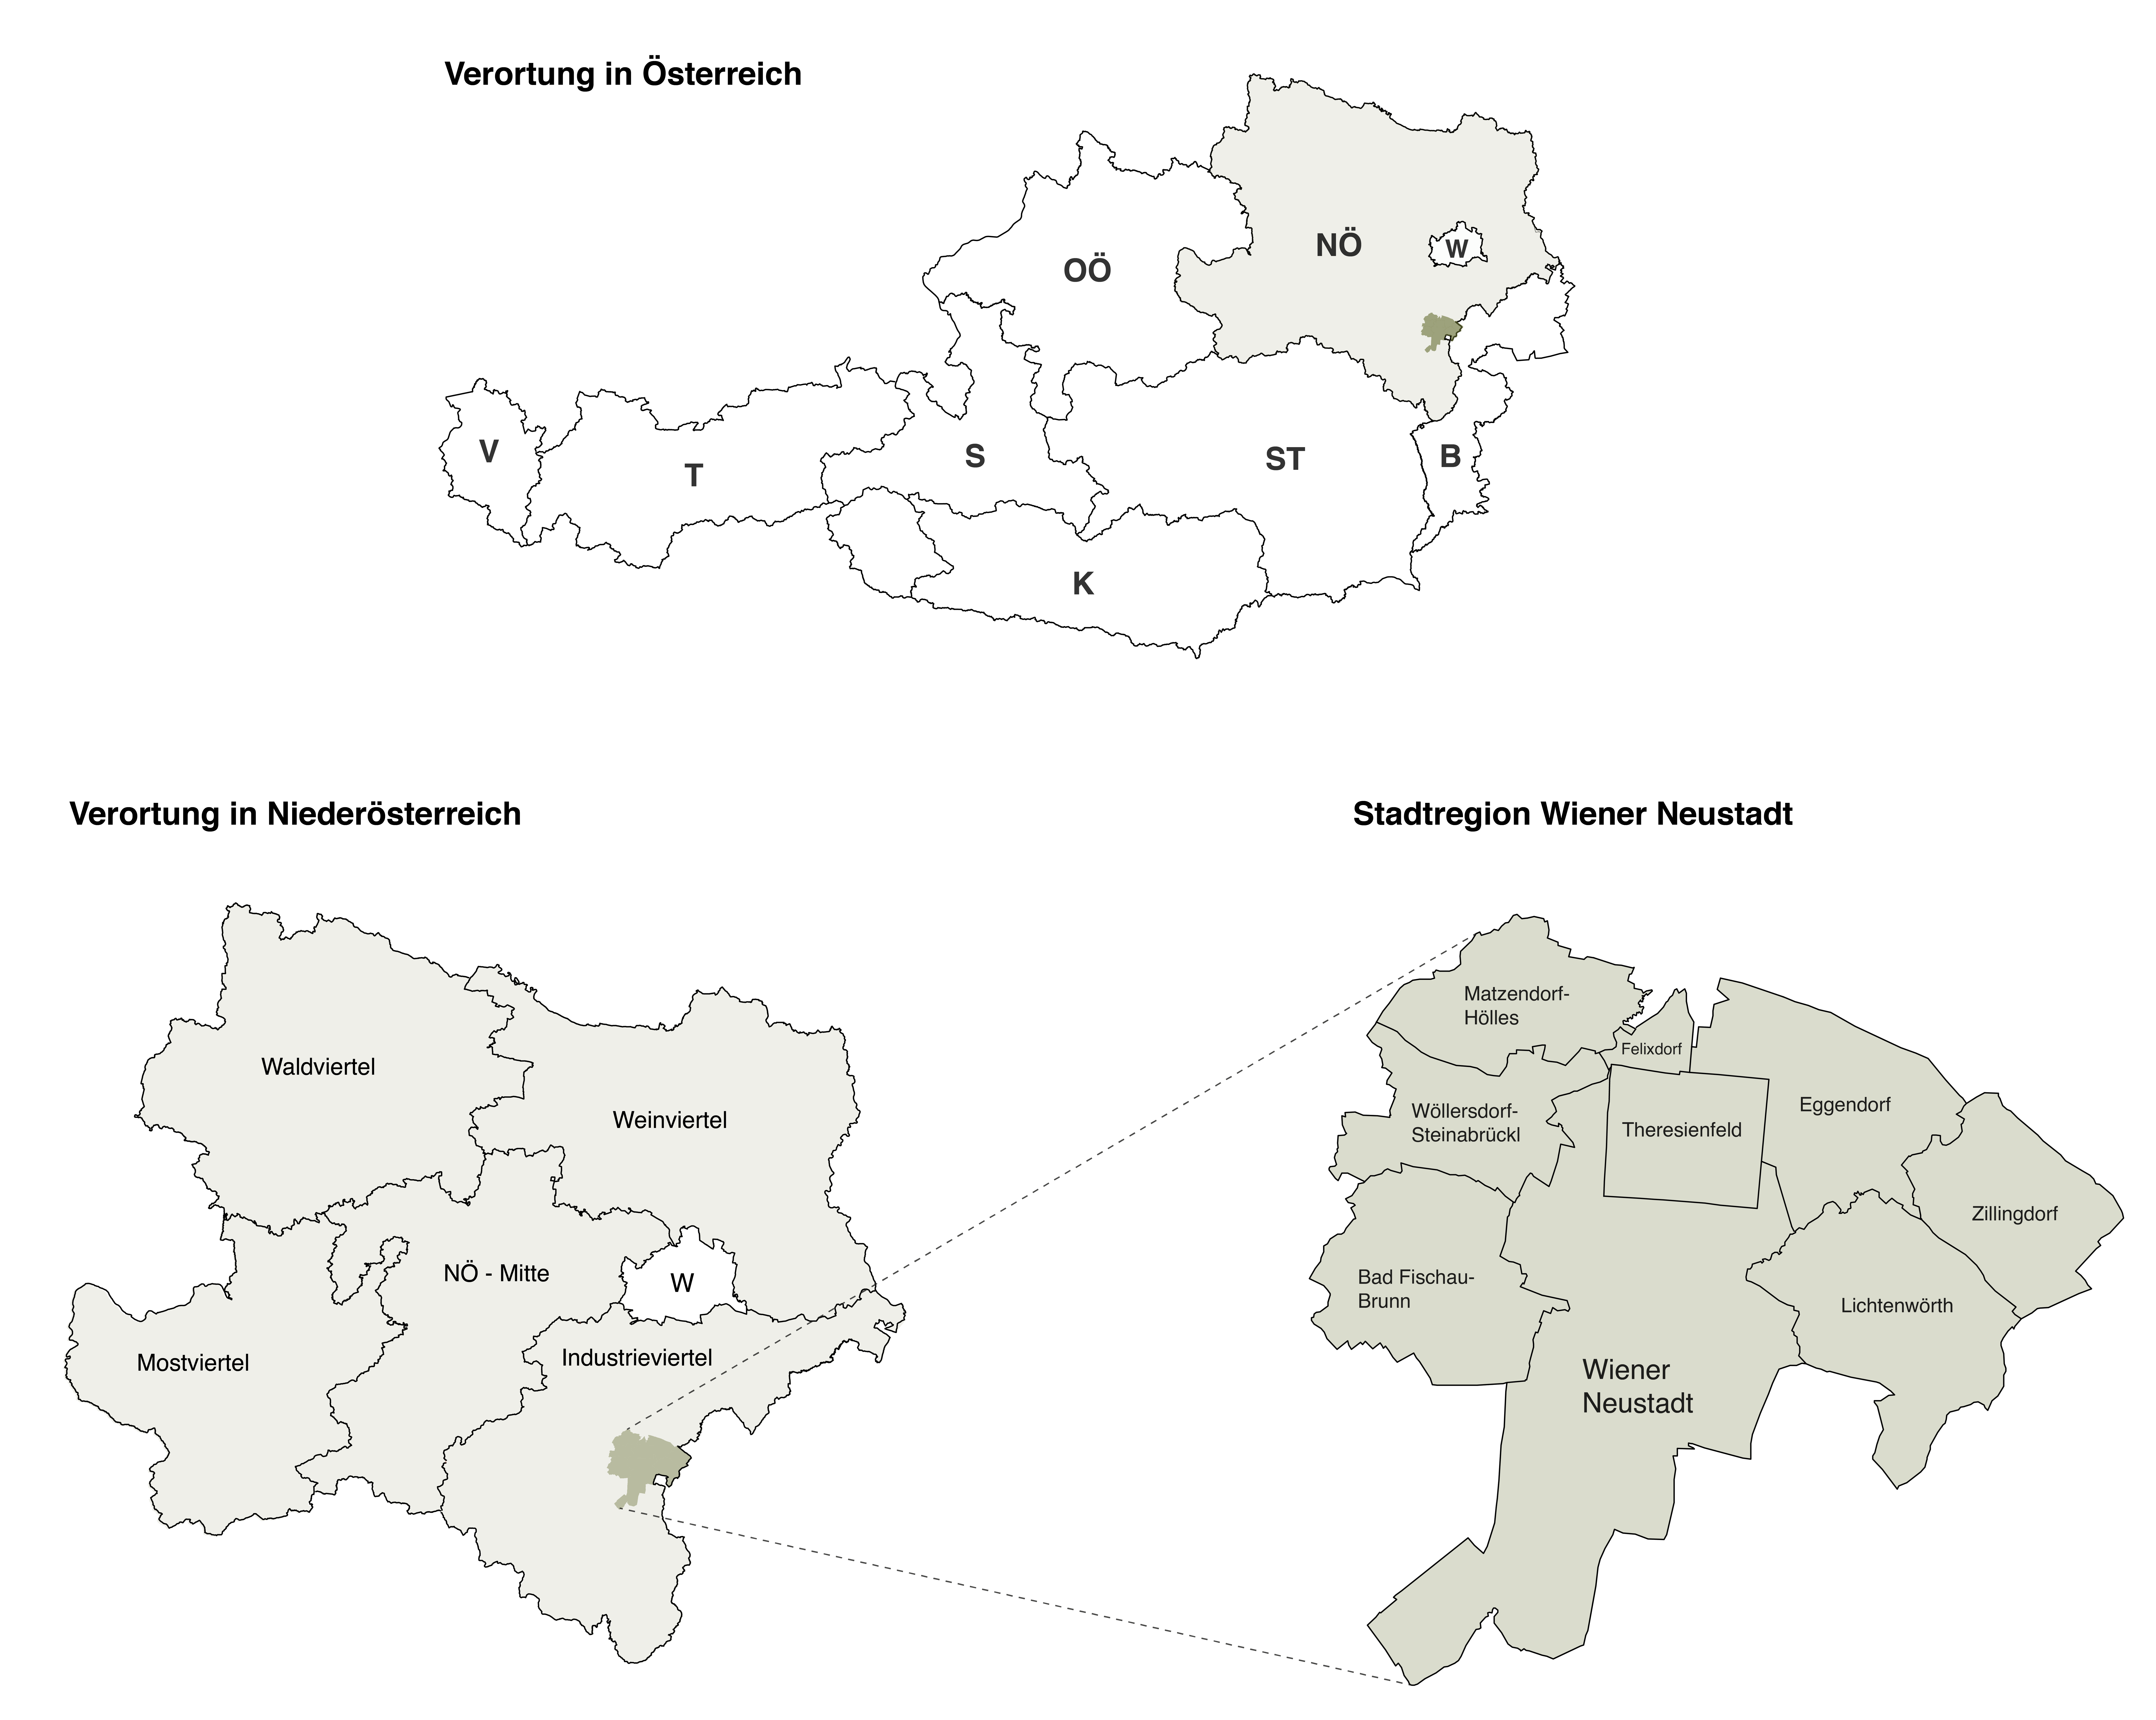 Verortung Stadtregion Wiener Neustadt